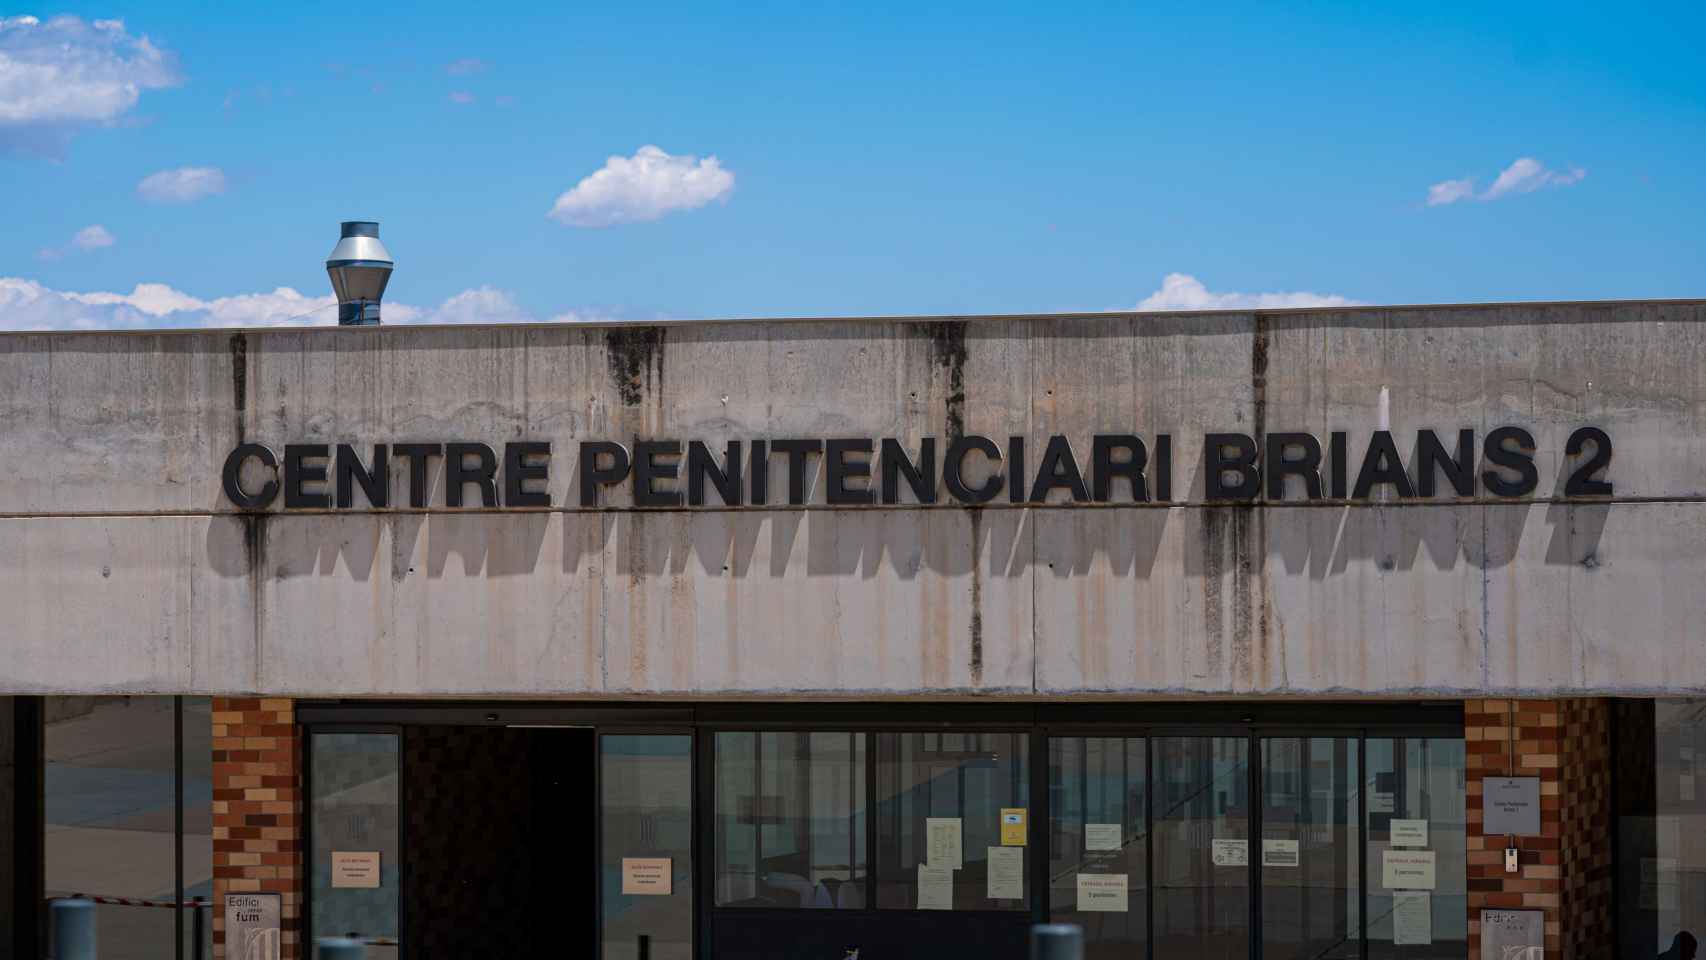 Centro Penitenciario Brians 2 de Barcelona. Funcionarios de prisiones / EUROPA PRESS